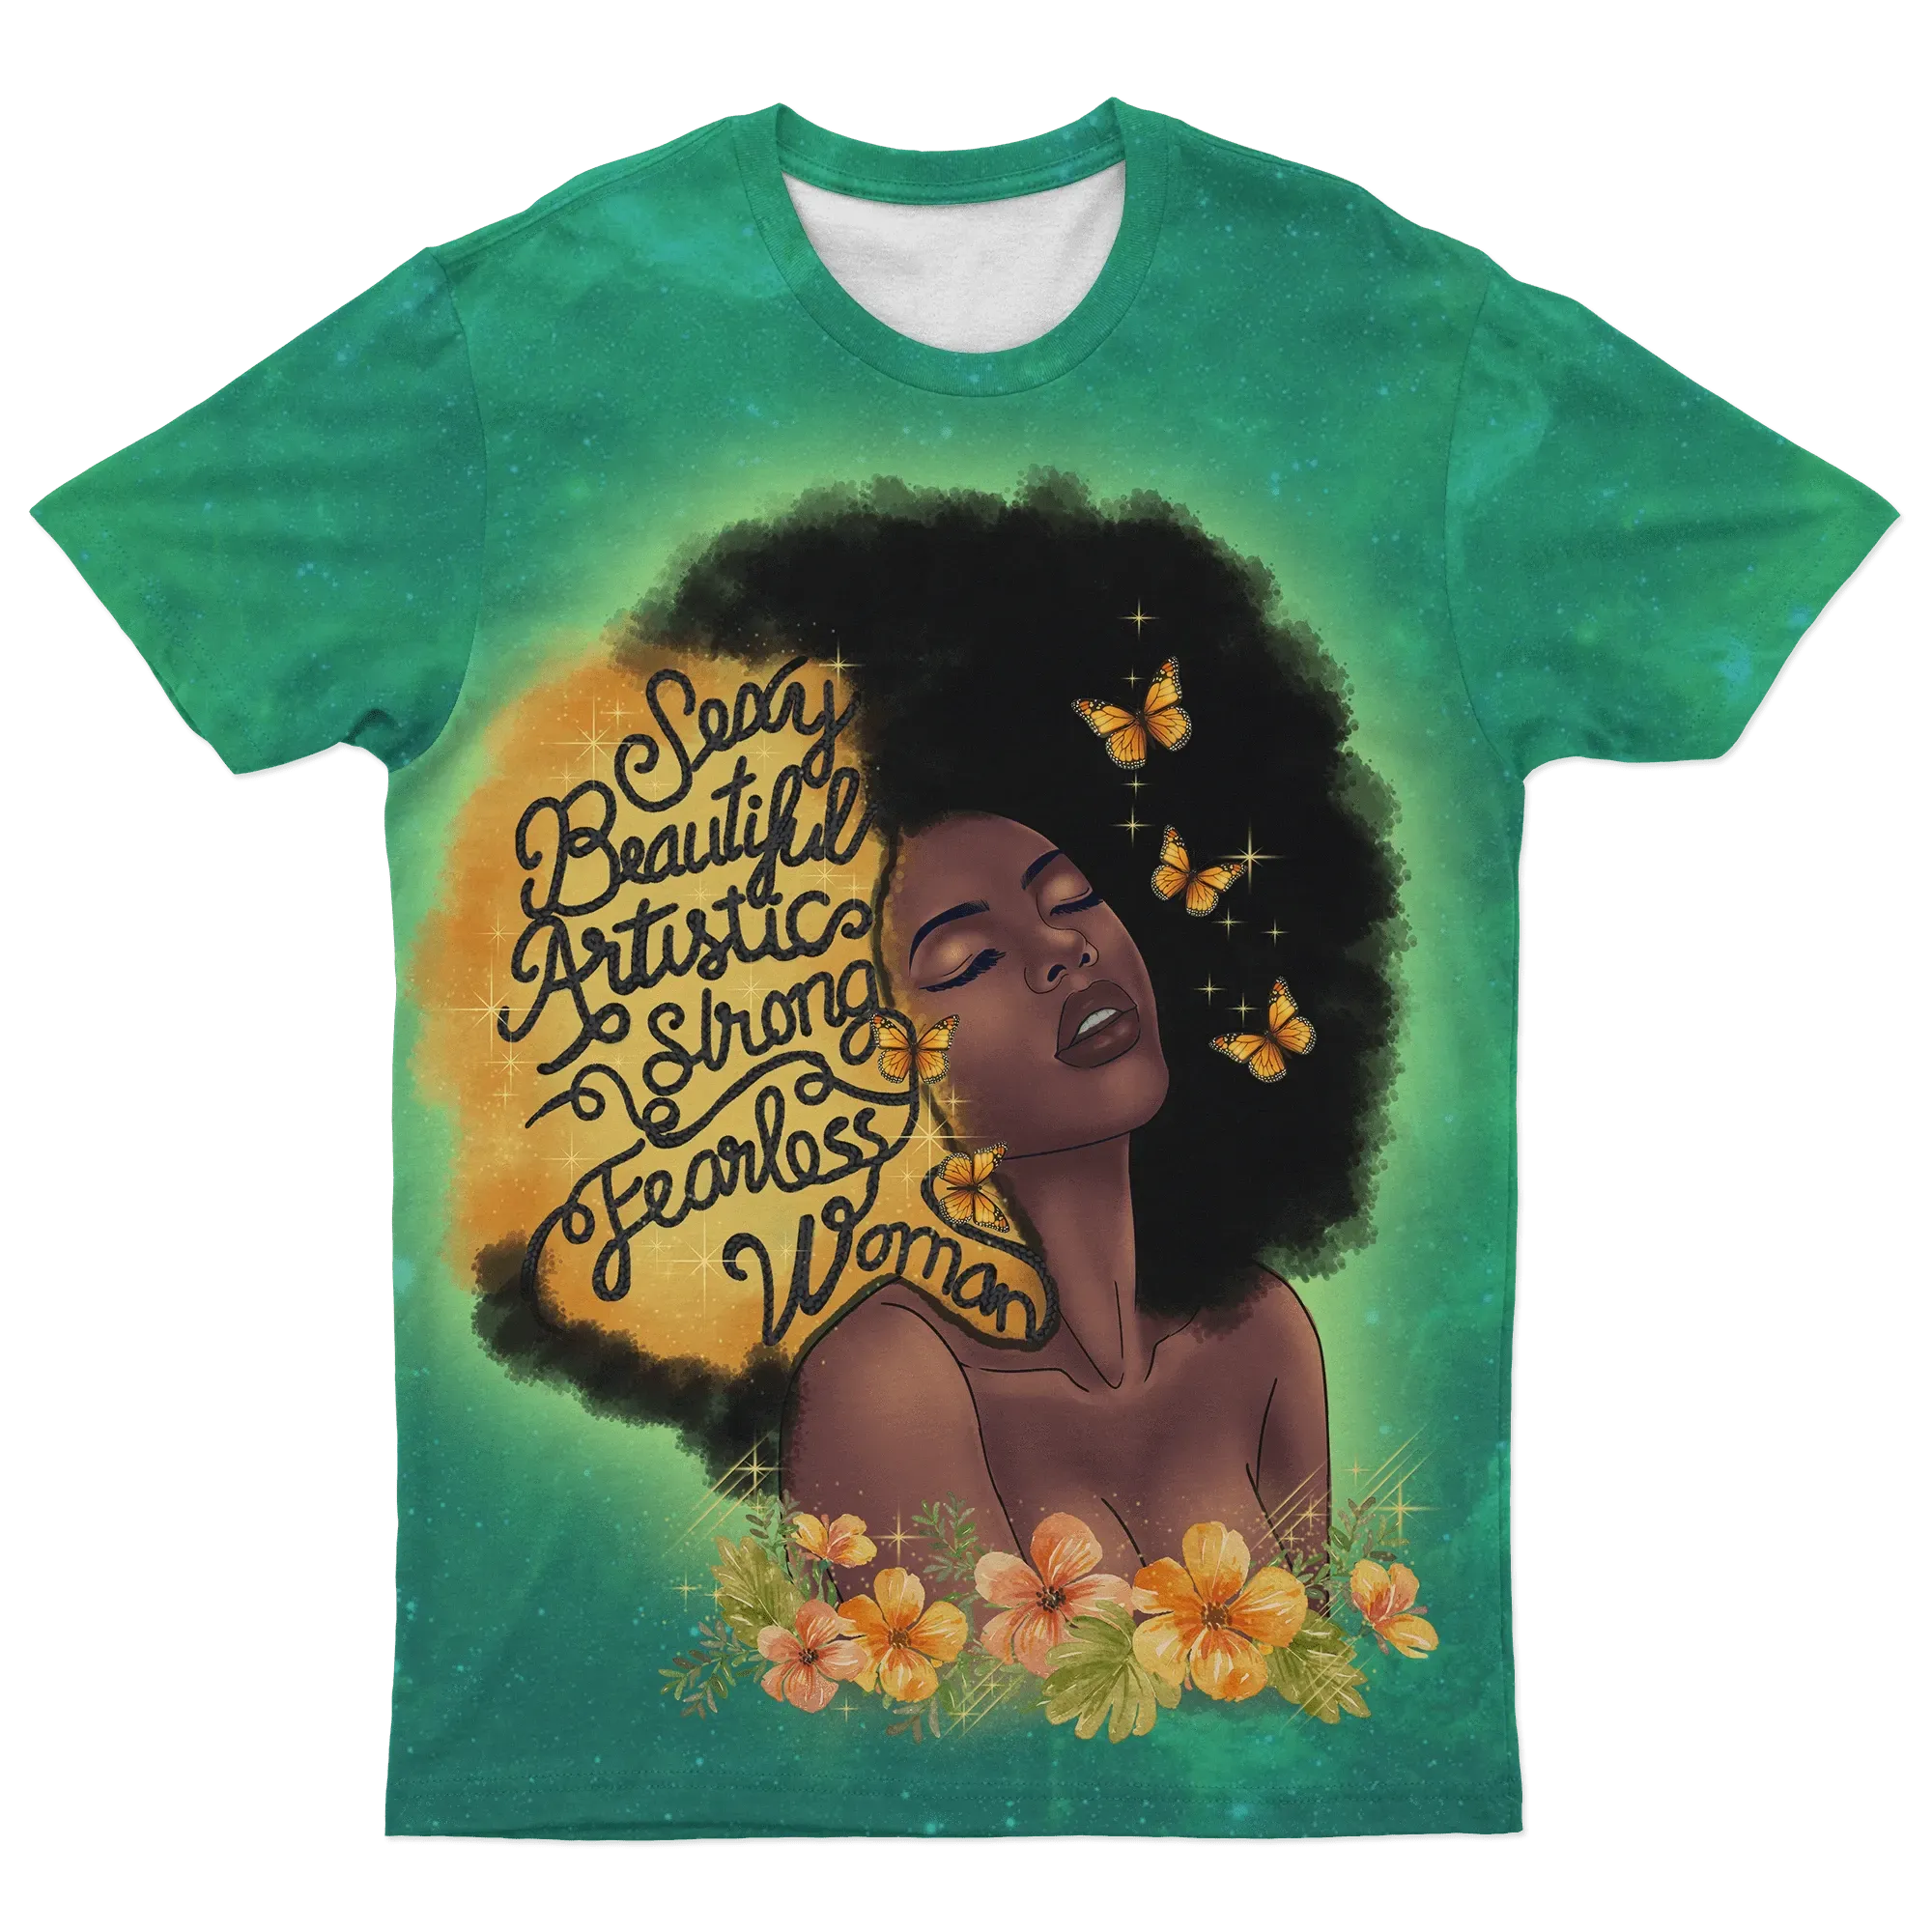 African T-shirt – Pan African RA Tee